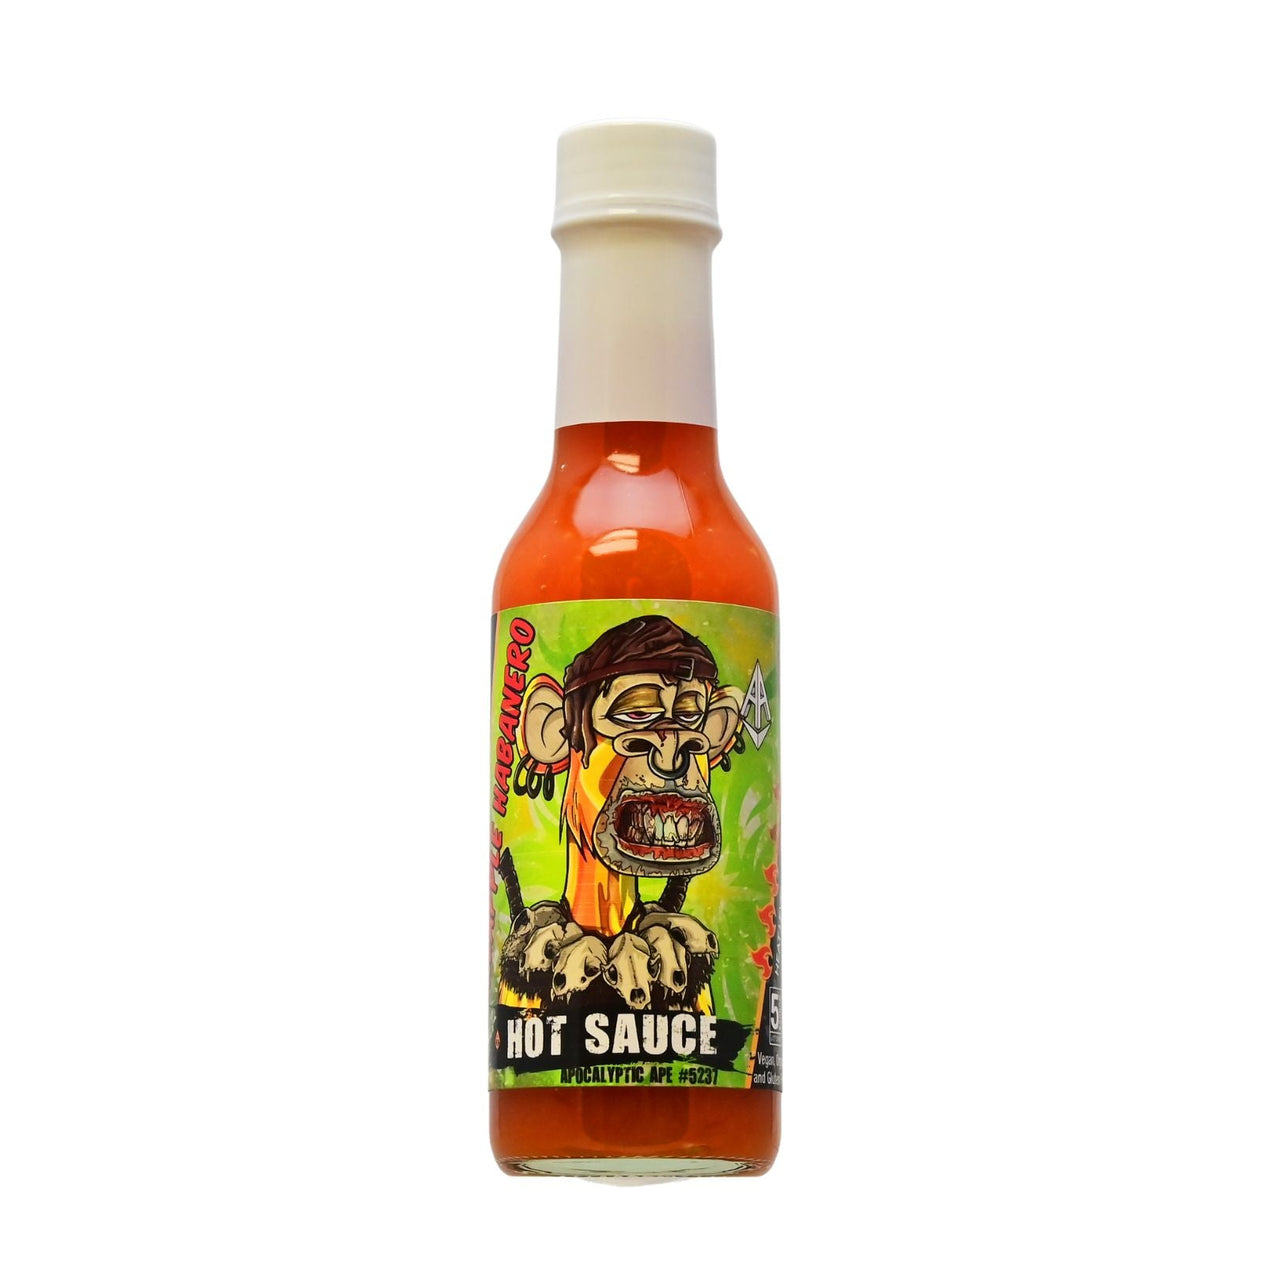 Apocalyptic Ape #5237 Pineapple Habanero Hot Sauce